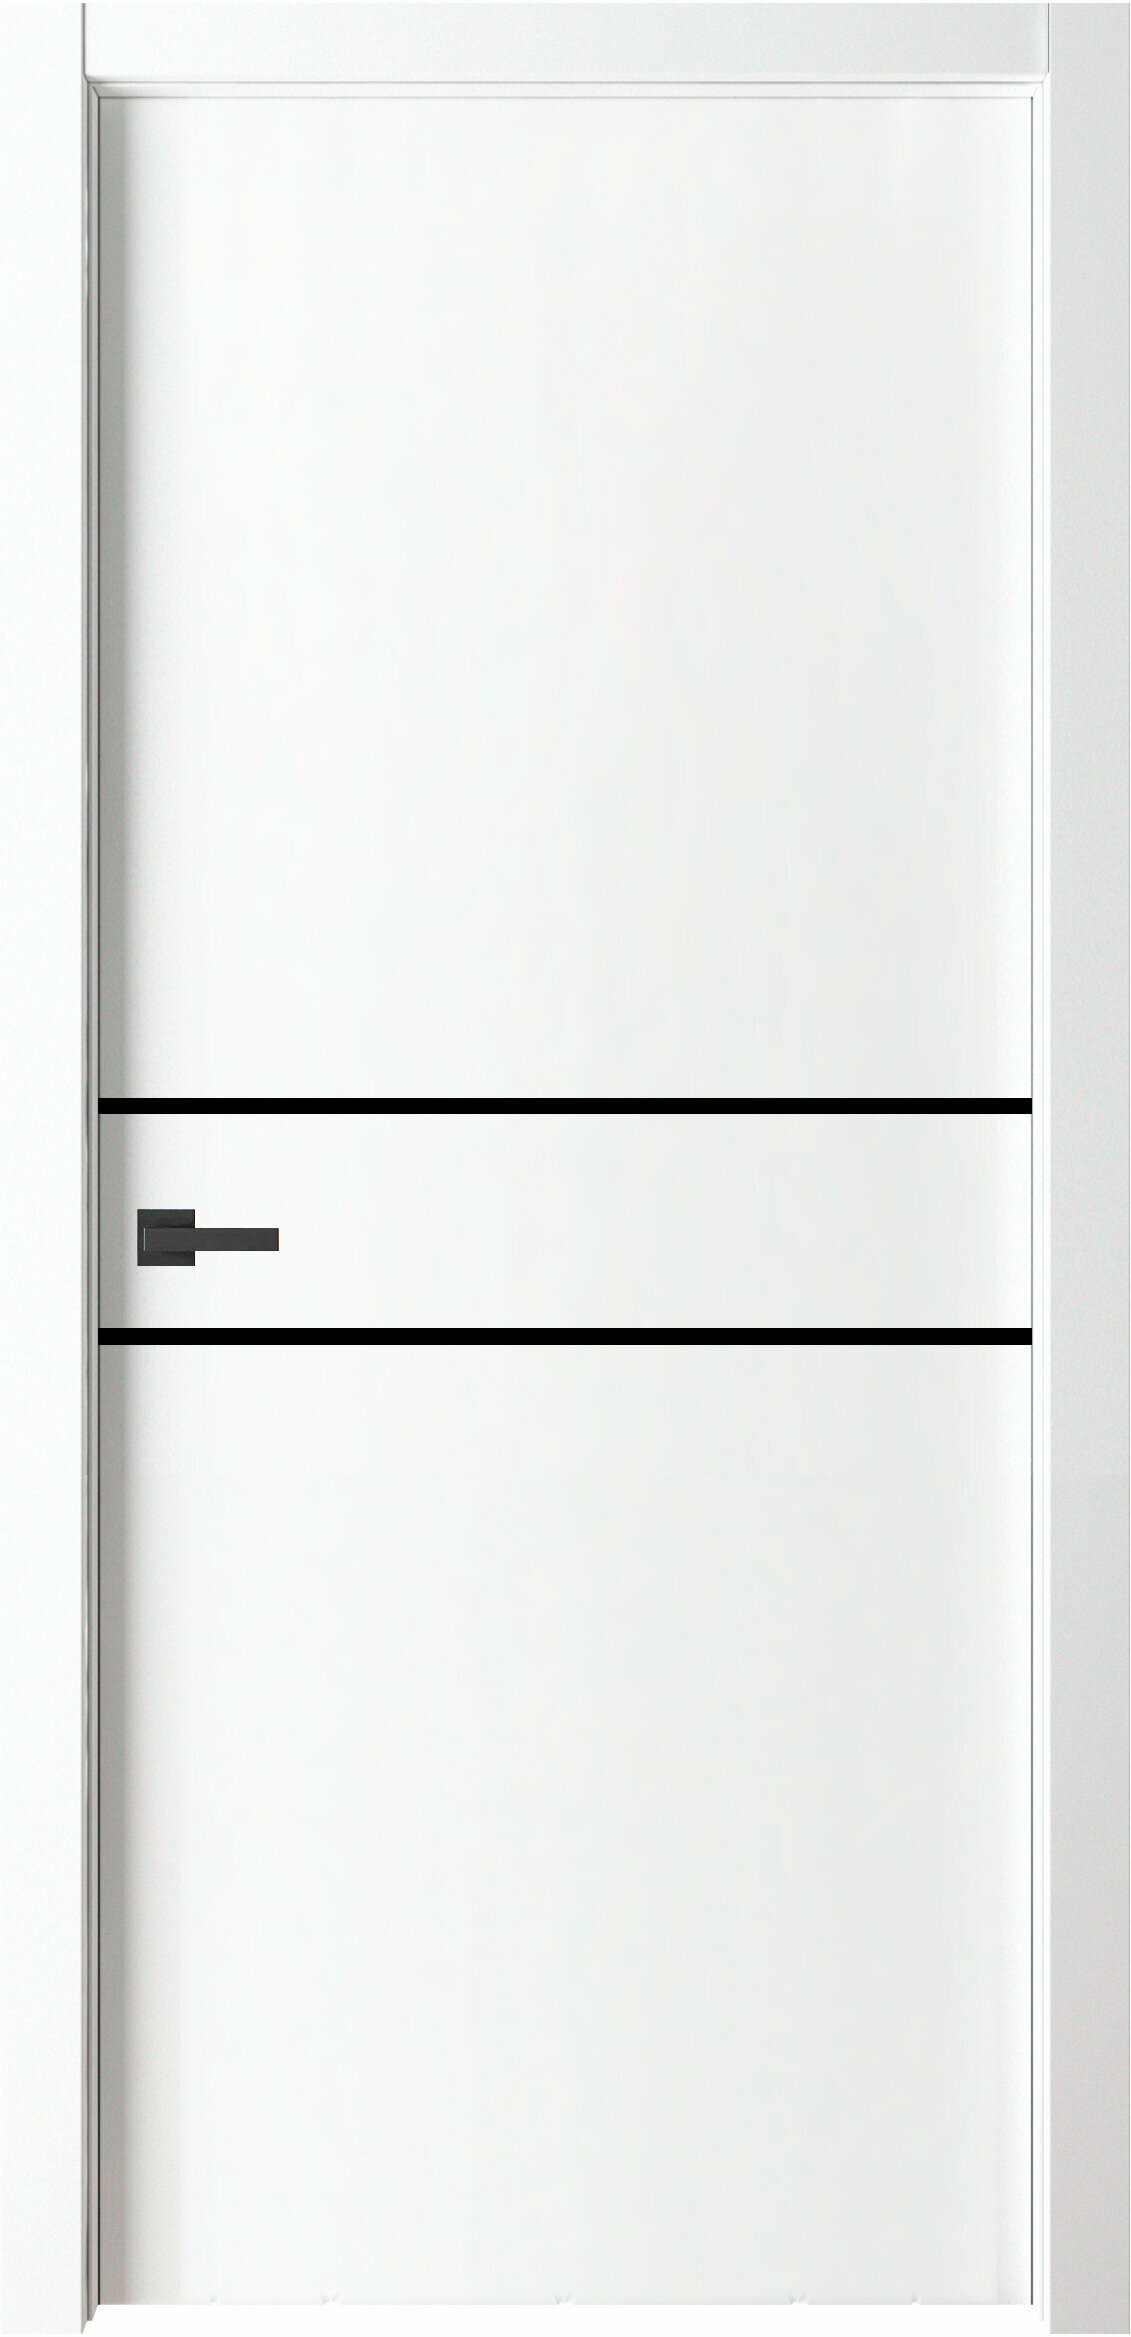 Межкомнатная дверь ВДК Line2 Цвет белый 700x2000 мм (комплект: полотно + коробочный брус + наличники)